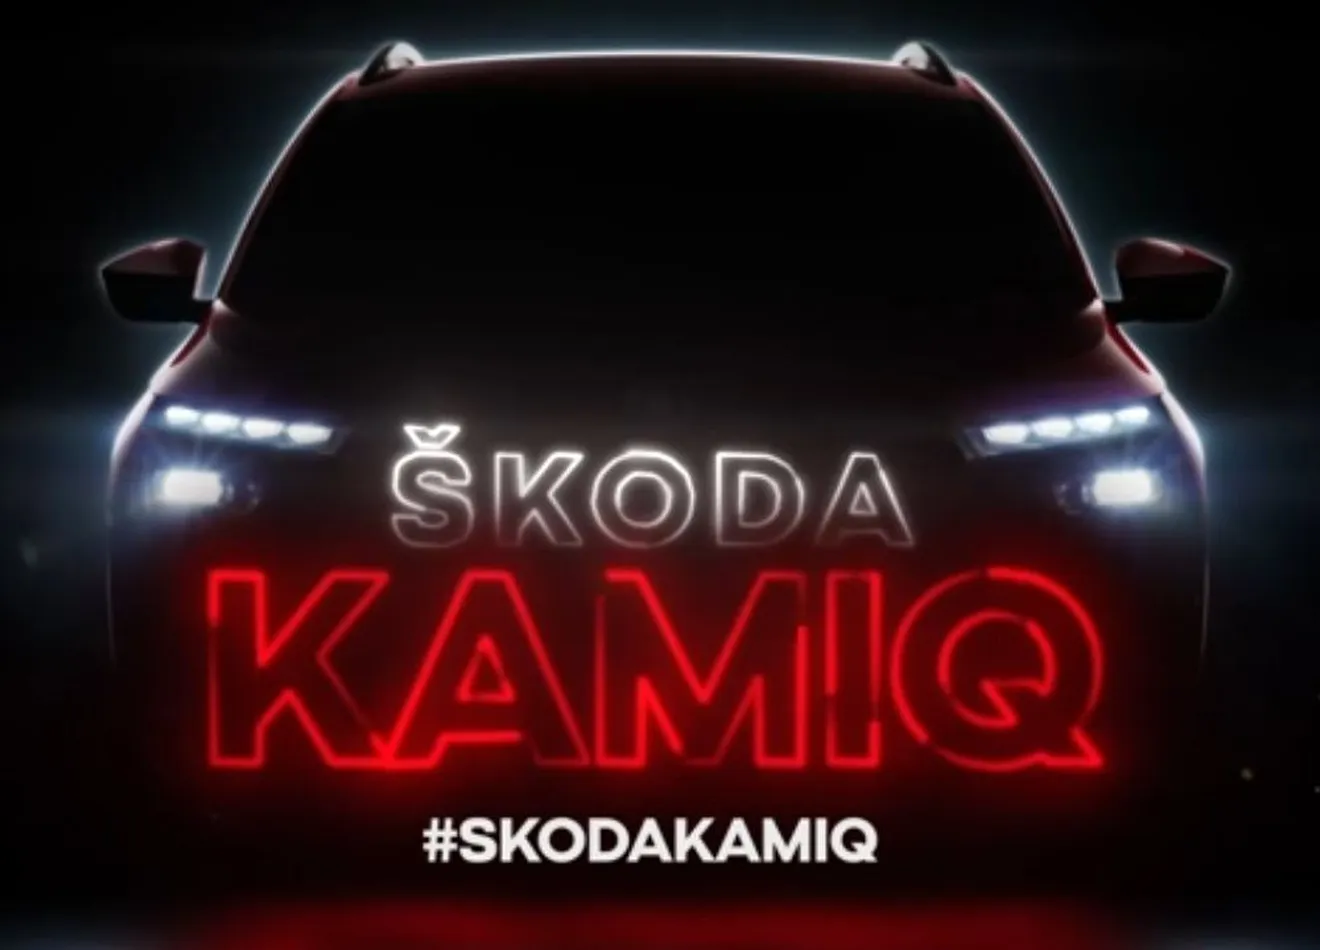 Skoda Kamiq será el nombre del nuevo B-SUV de Skoda en Europa